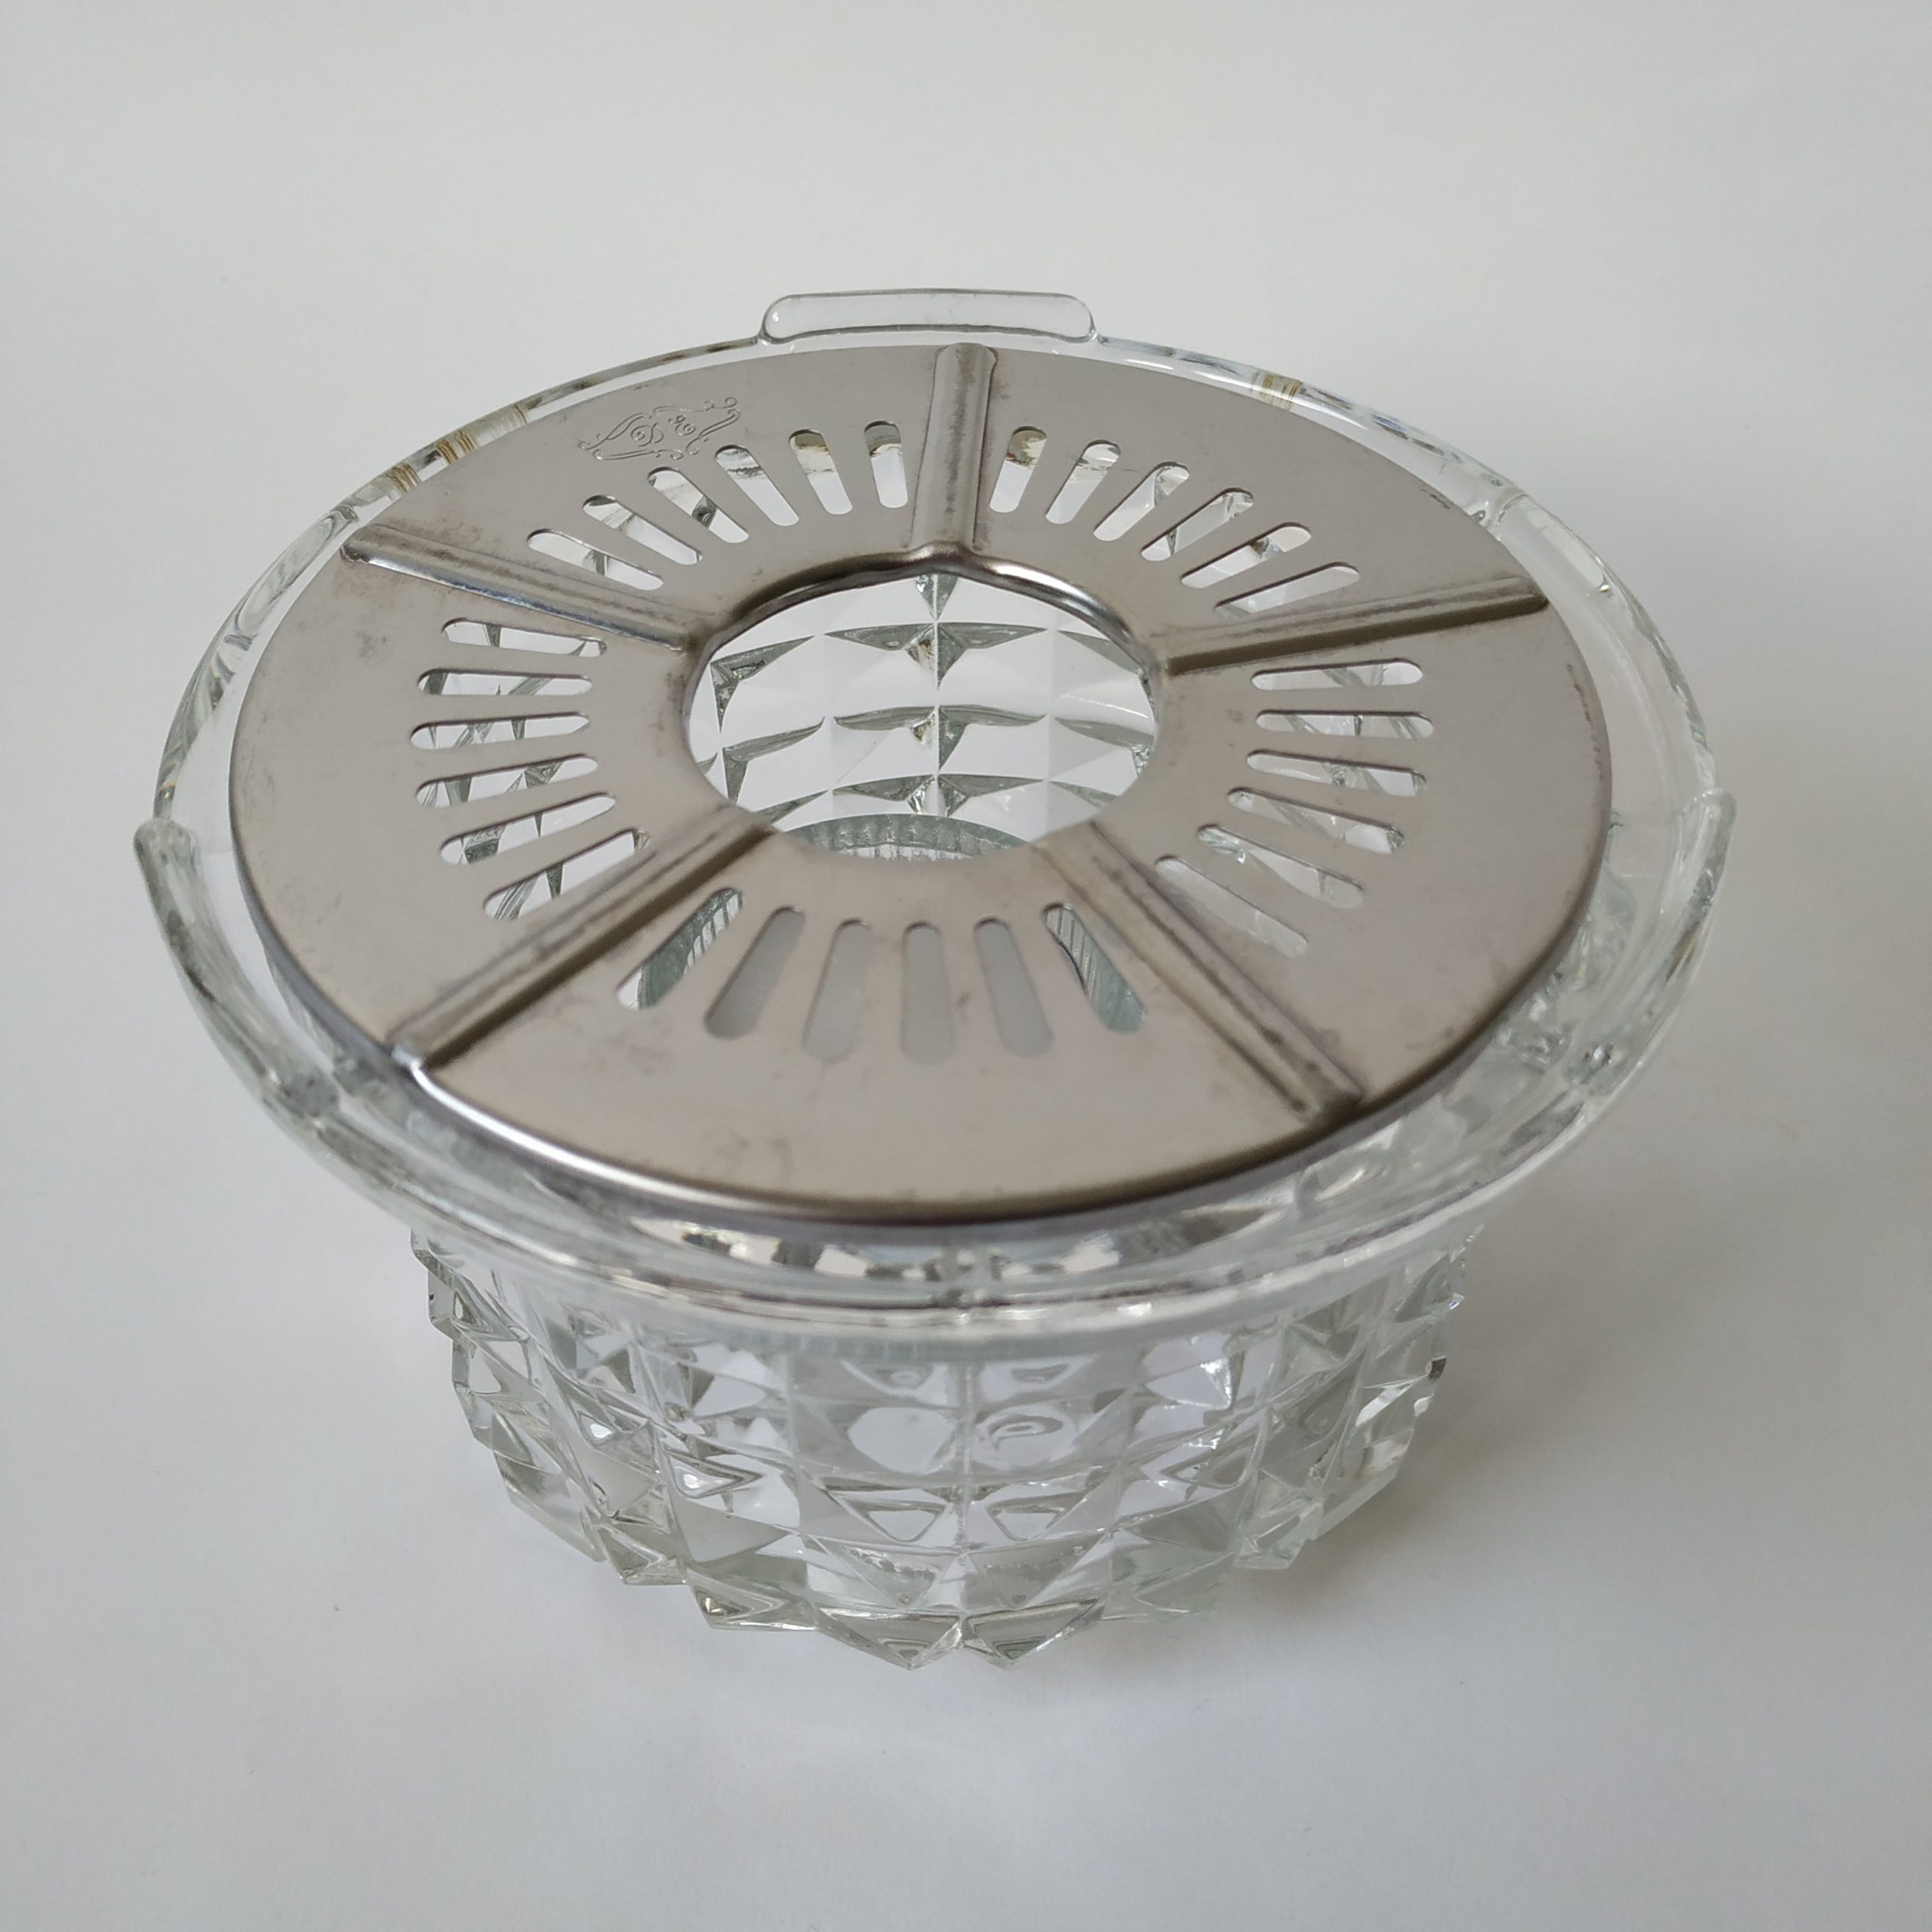 Theelichthouder van glas van Douwe Egberts met zilverkleurig rooster – diameter 14 cm – hoogte 8,5 cm (2)